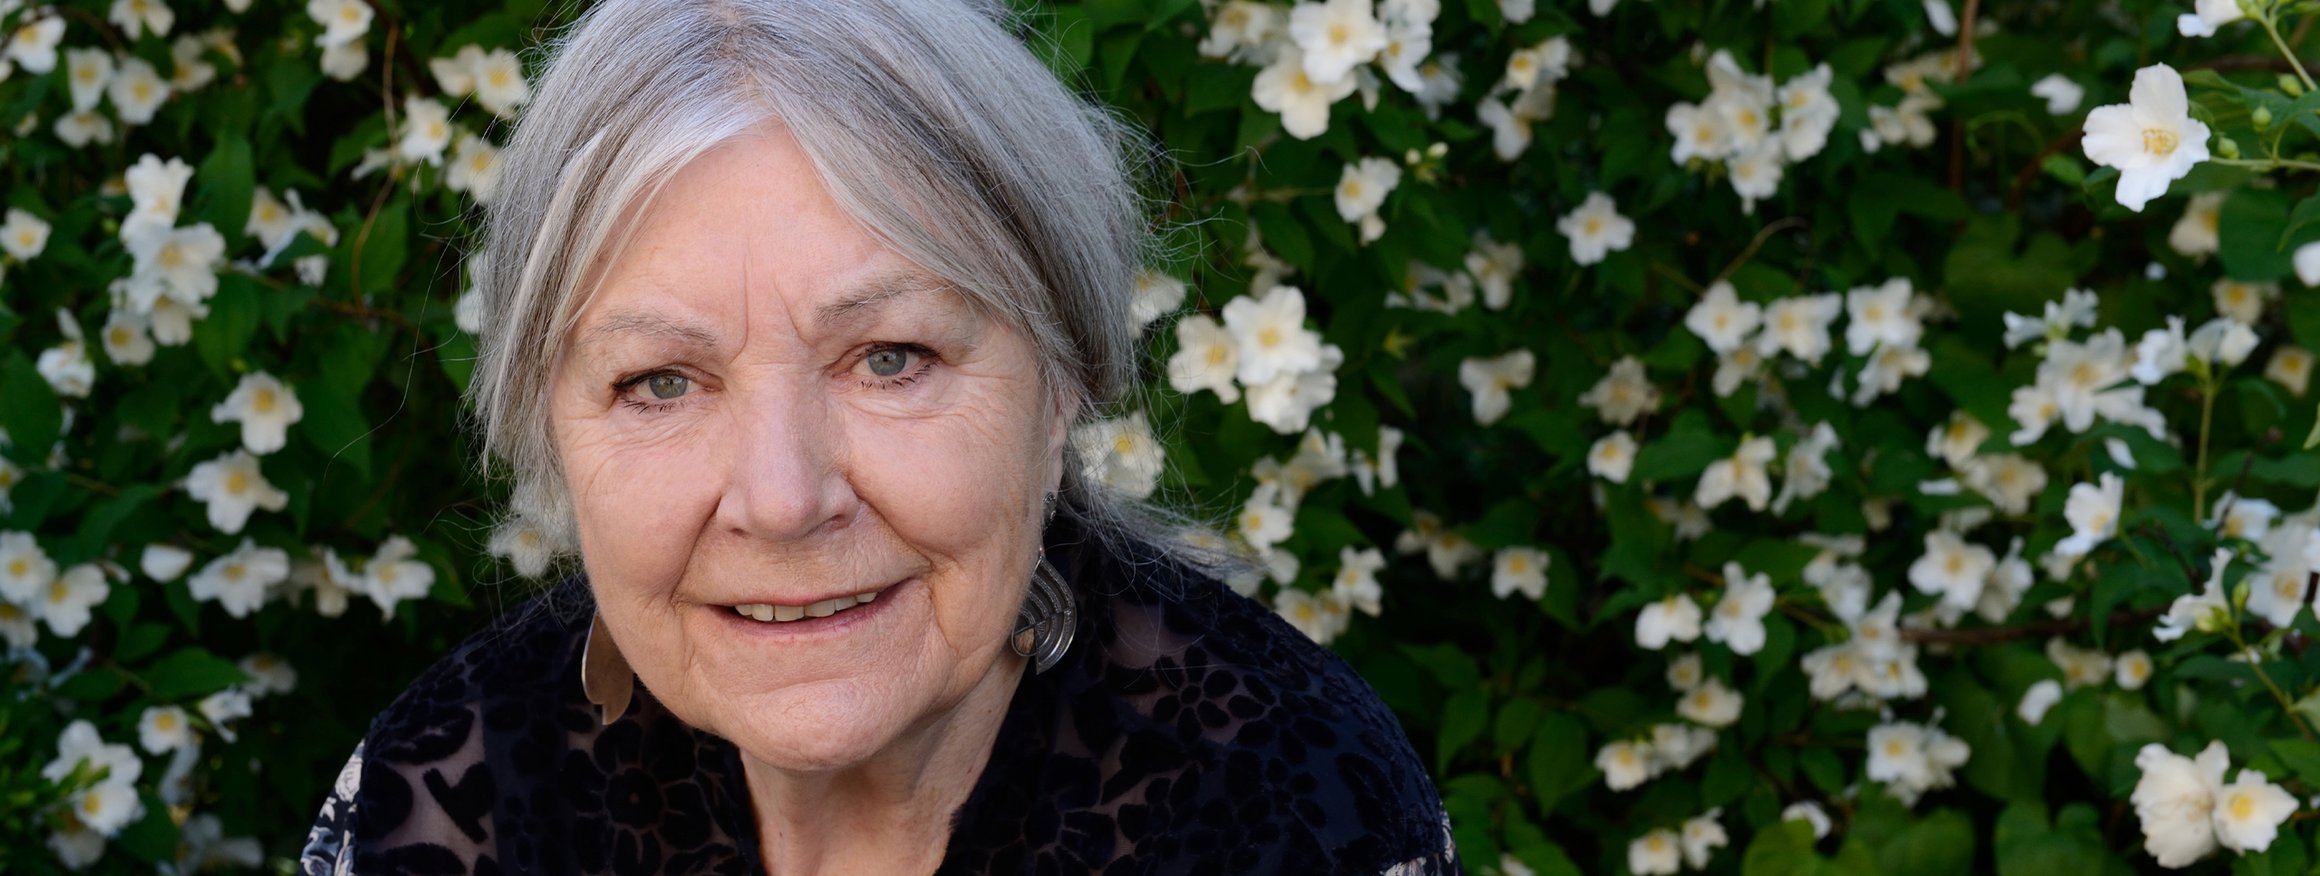 Die Schriftstellerin und Psychologin Helga Schubert vor einer Blumenhecke